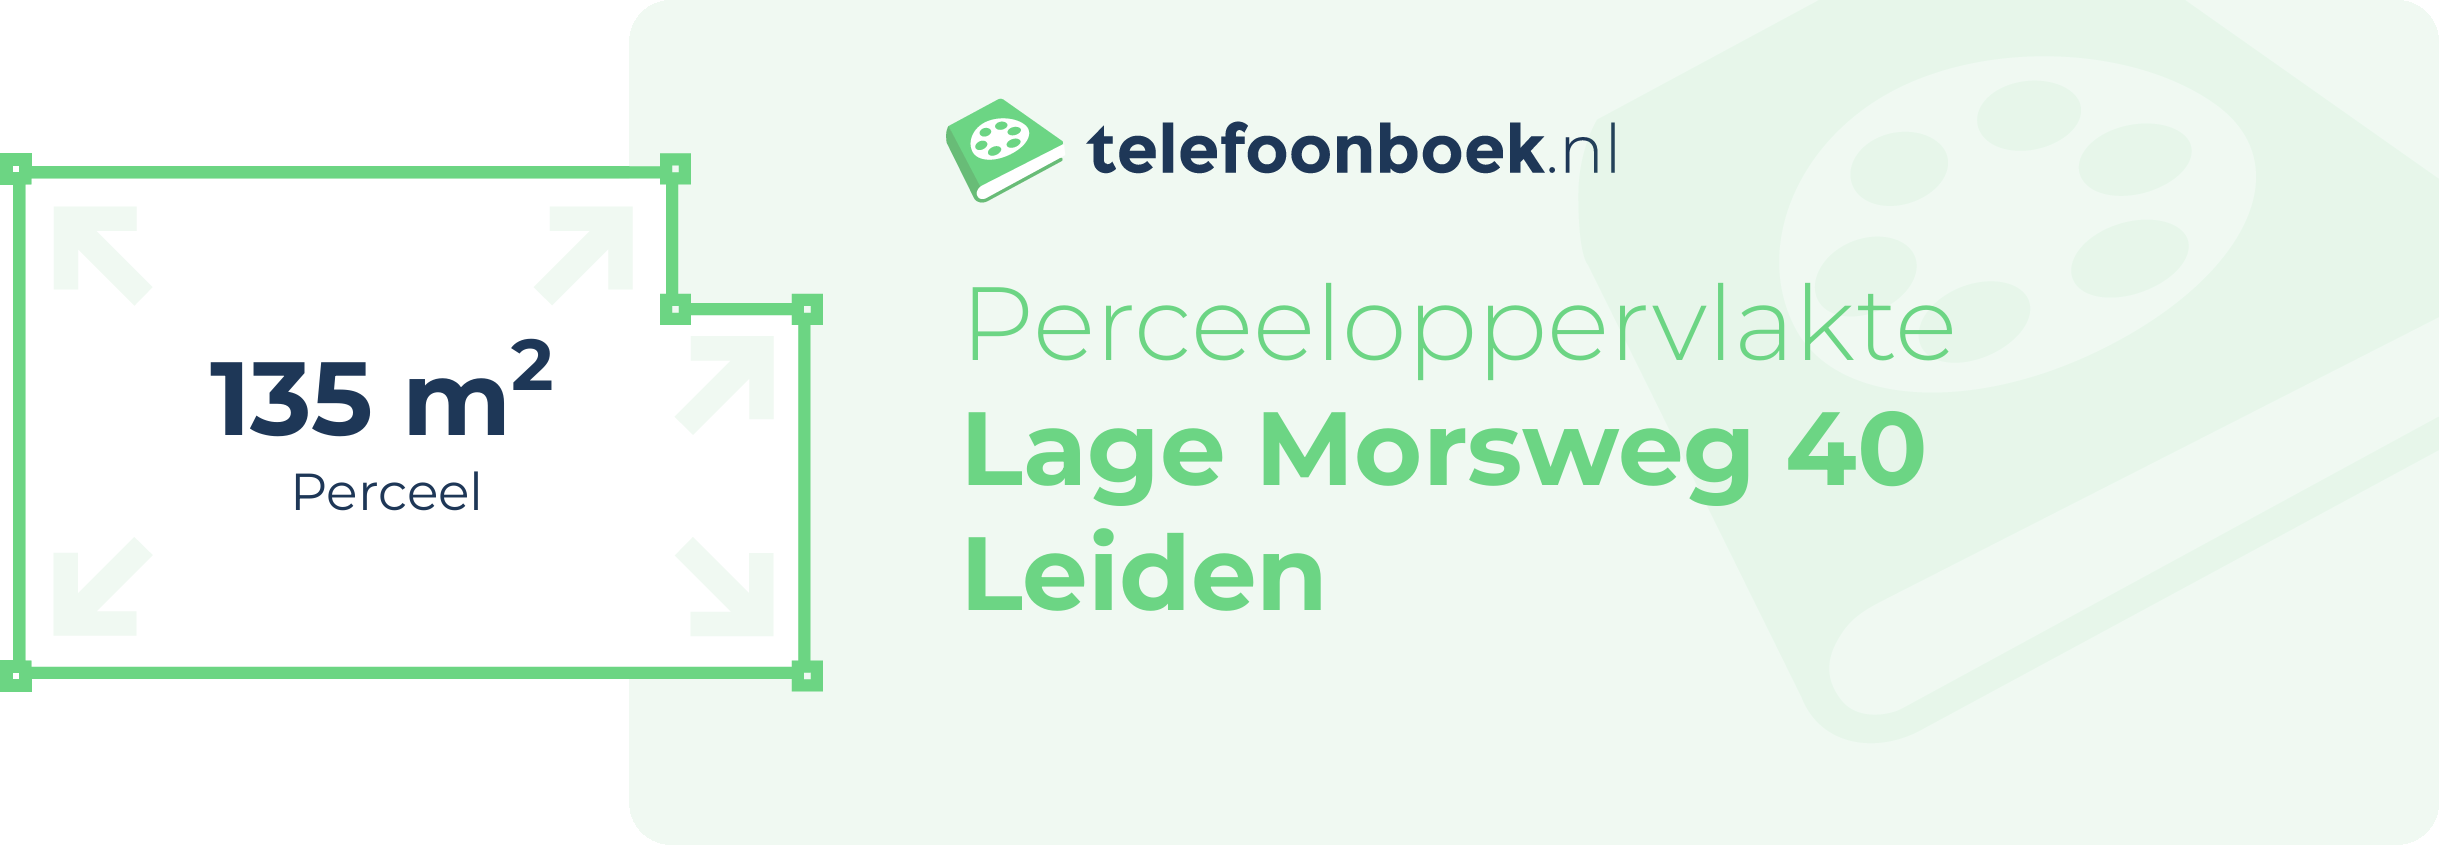 Perceeloppervlakte Lage Morsweg 40 Leiden